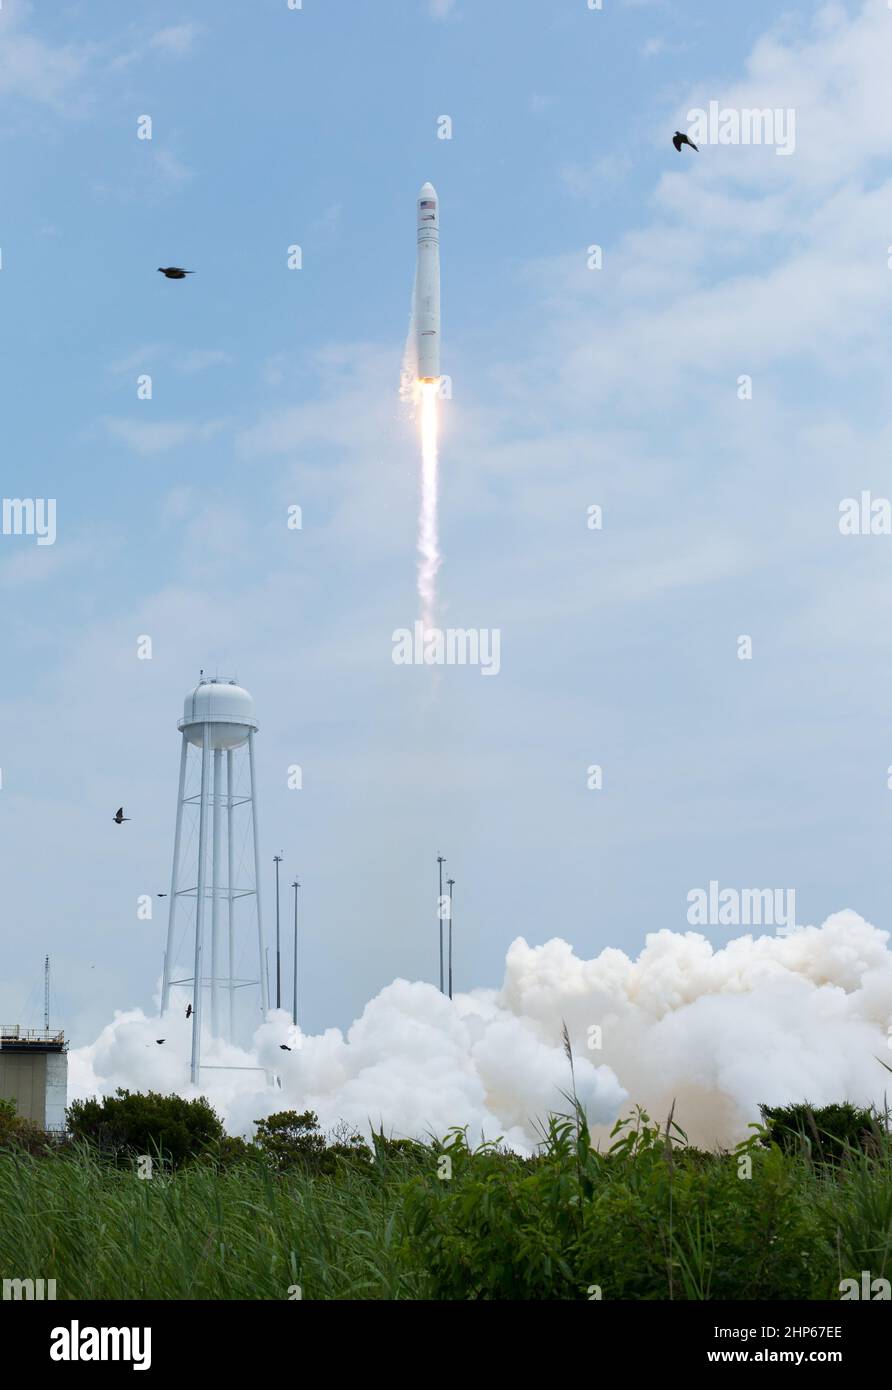 El cohete Antares de la Orbital Sciences Corporation se lanza desde Pad-0A con la nave espacial Cygnus a bordo, el domingo 13 de julio de 2014, en las instalaciones de vuelo Wallops de la NASA en Virginia. Foto de stock